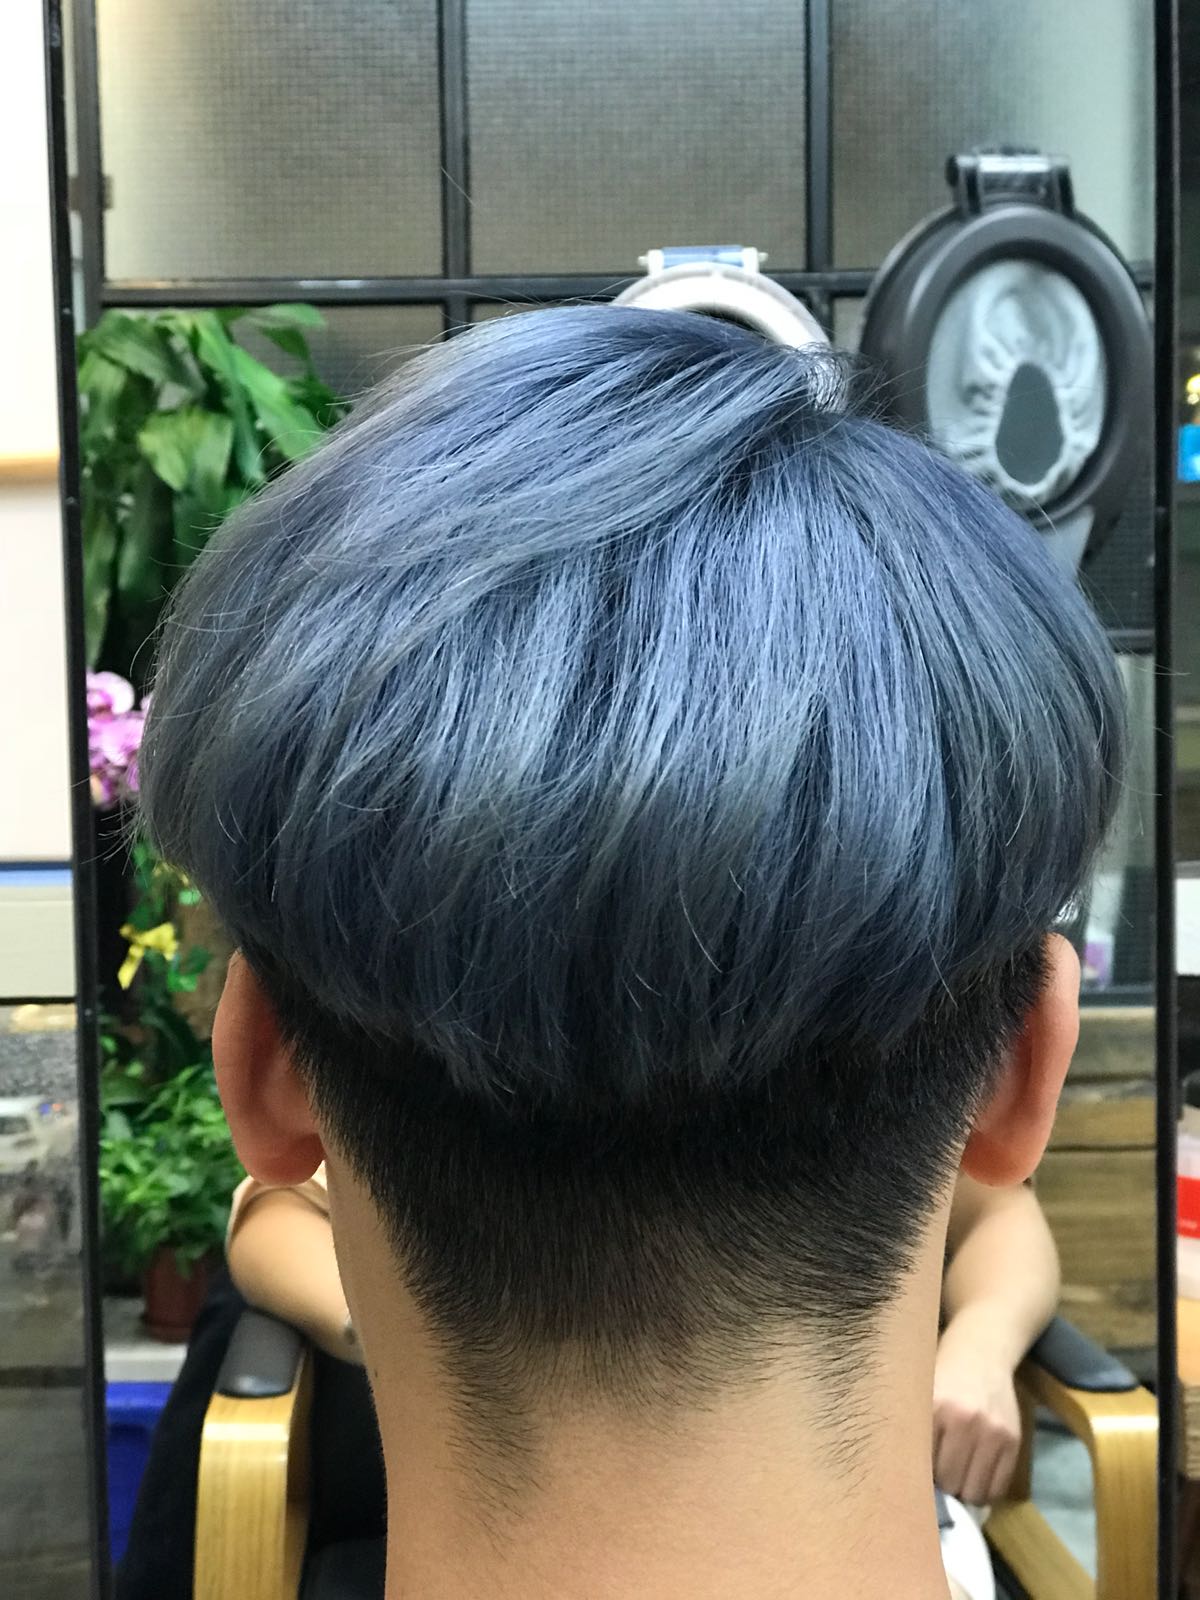 髮型作品参考:灰藍